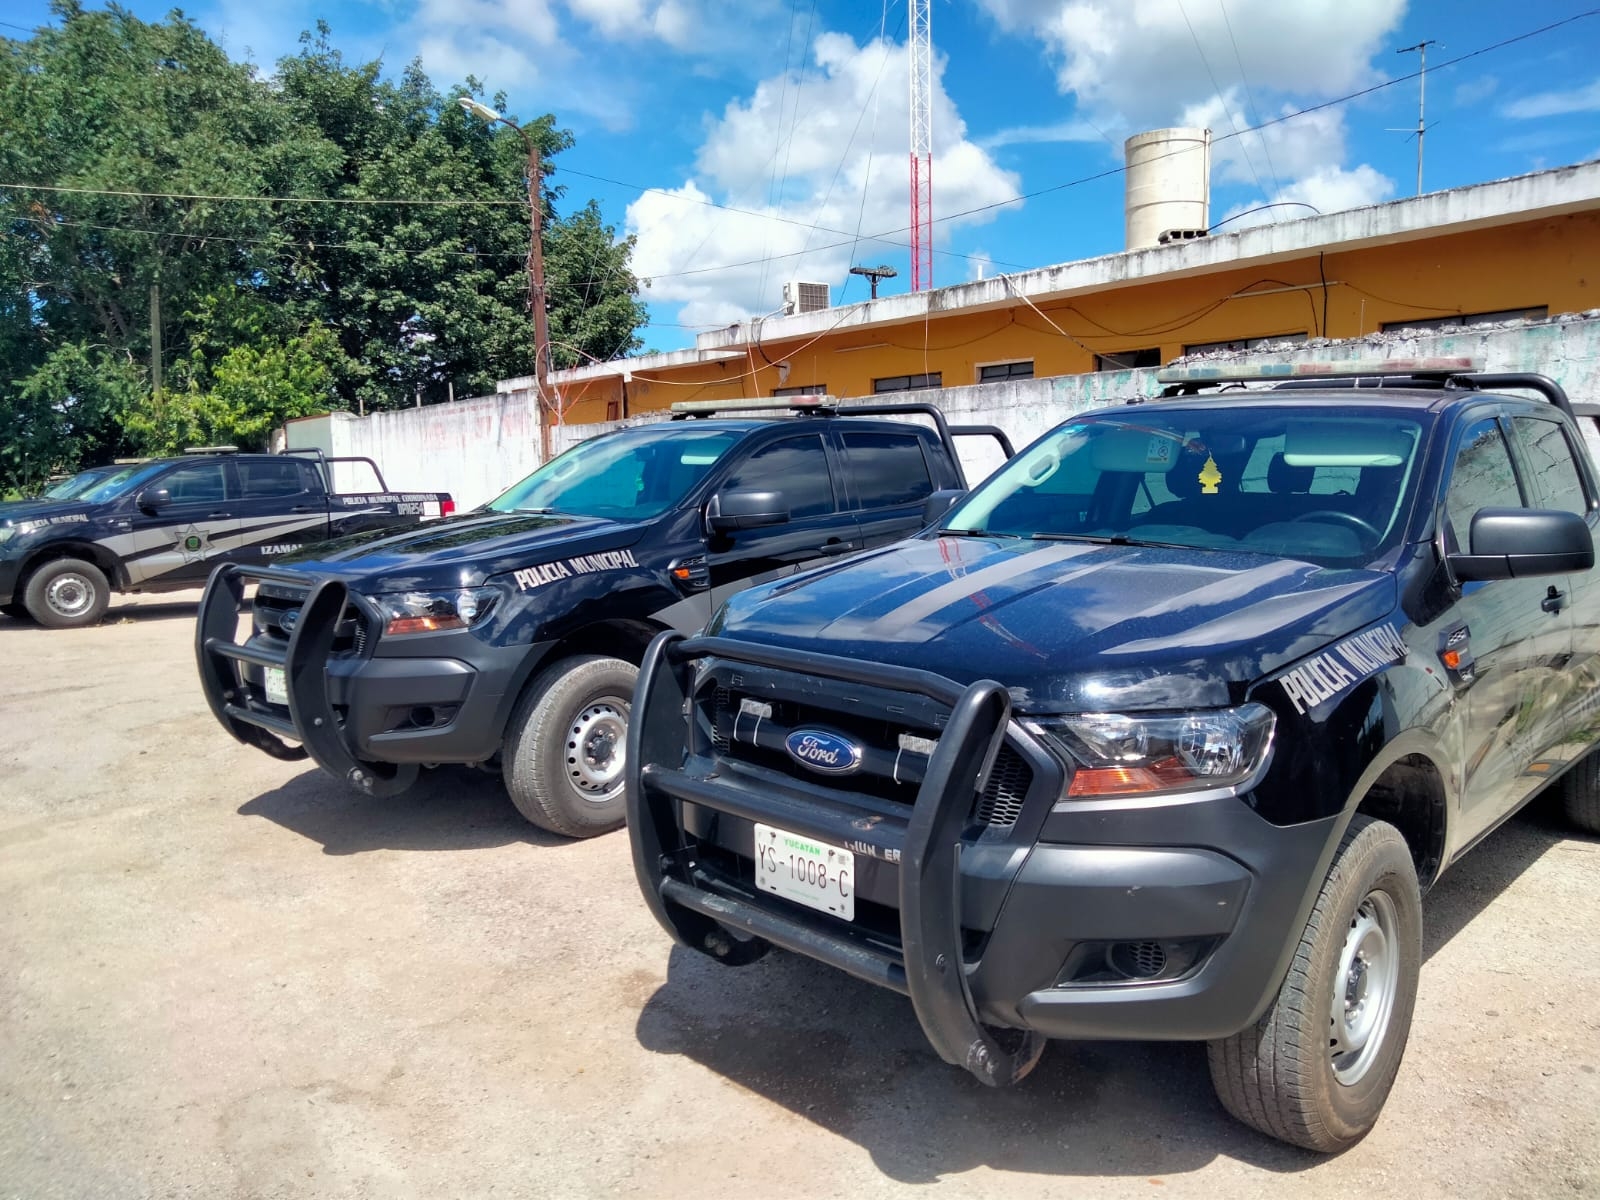 Policías buscan a los responsables del atentado contra un joven en Izamal, Yucatán